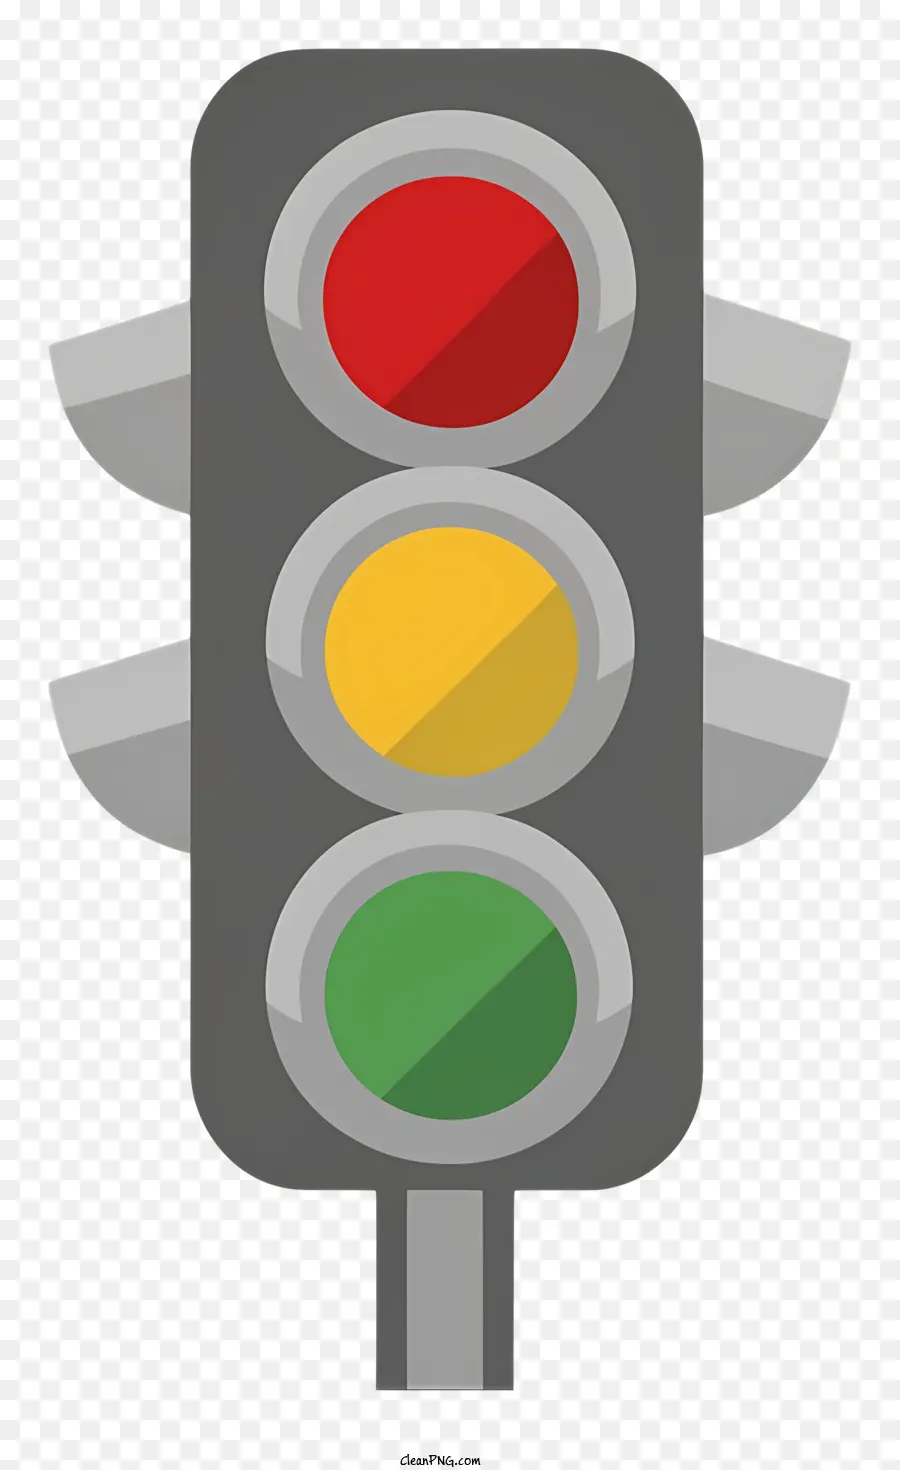 đèn giao thông - Đèn giao thông với đèn đỏ, vàng và xanh